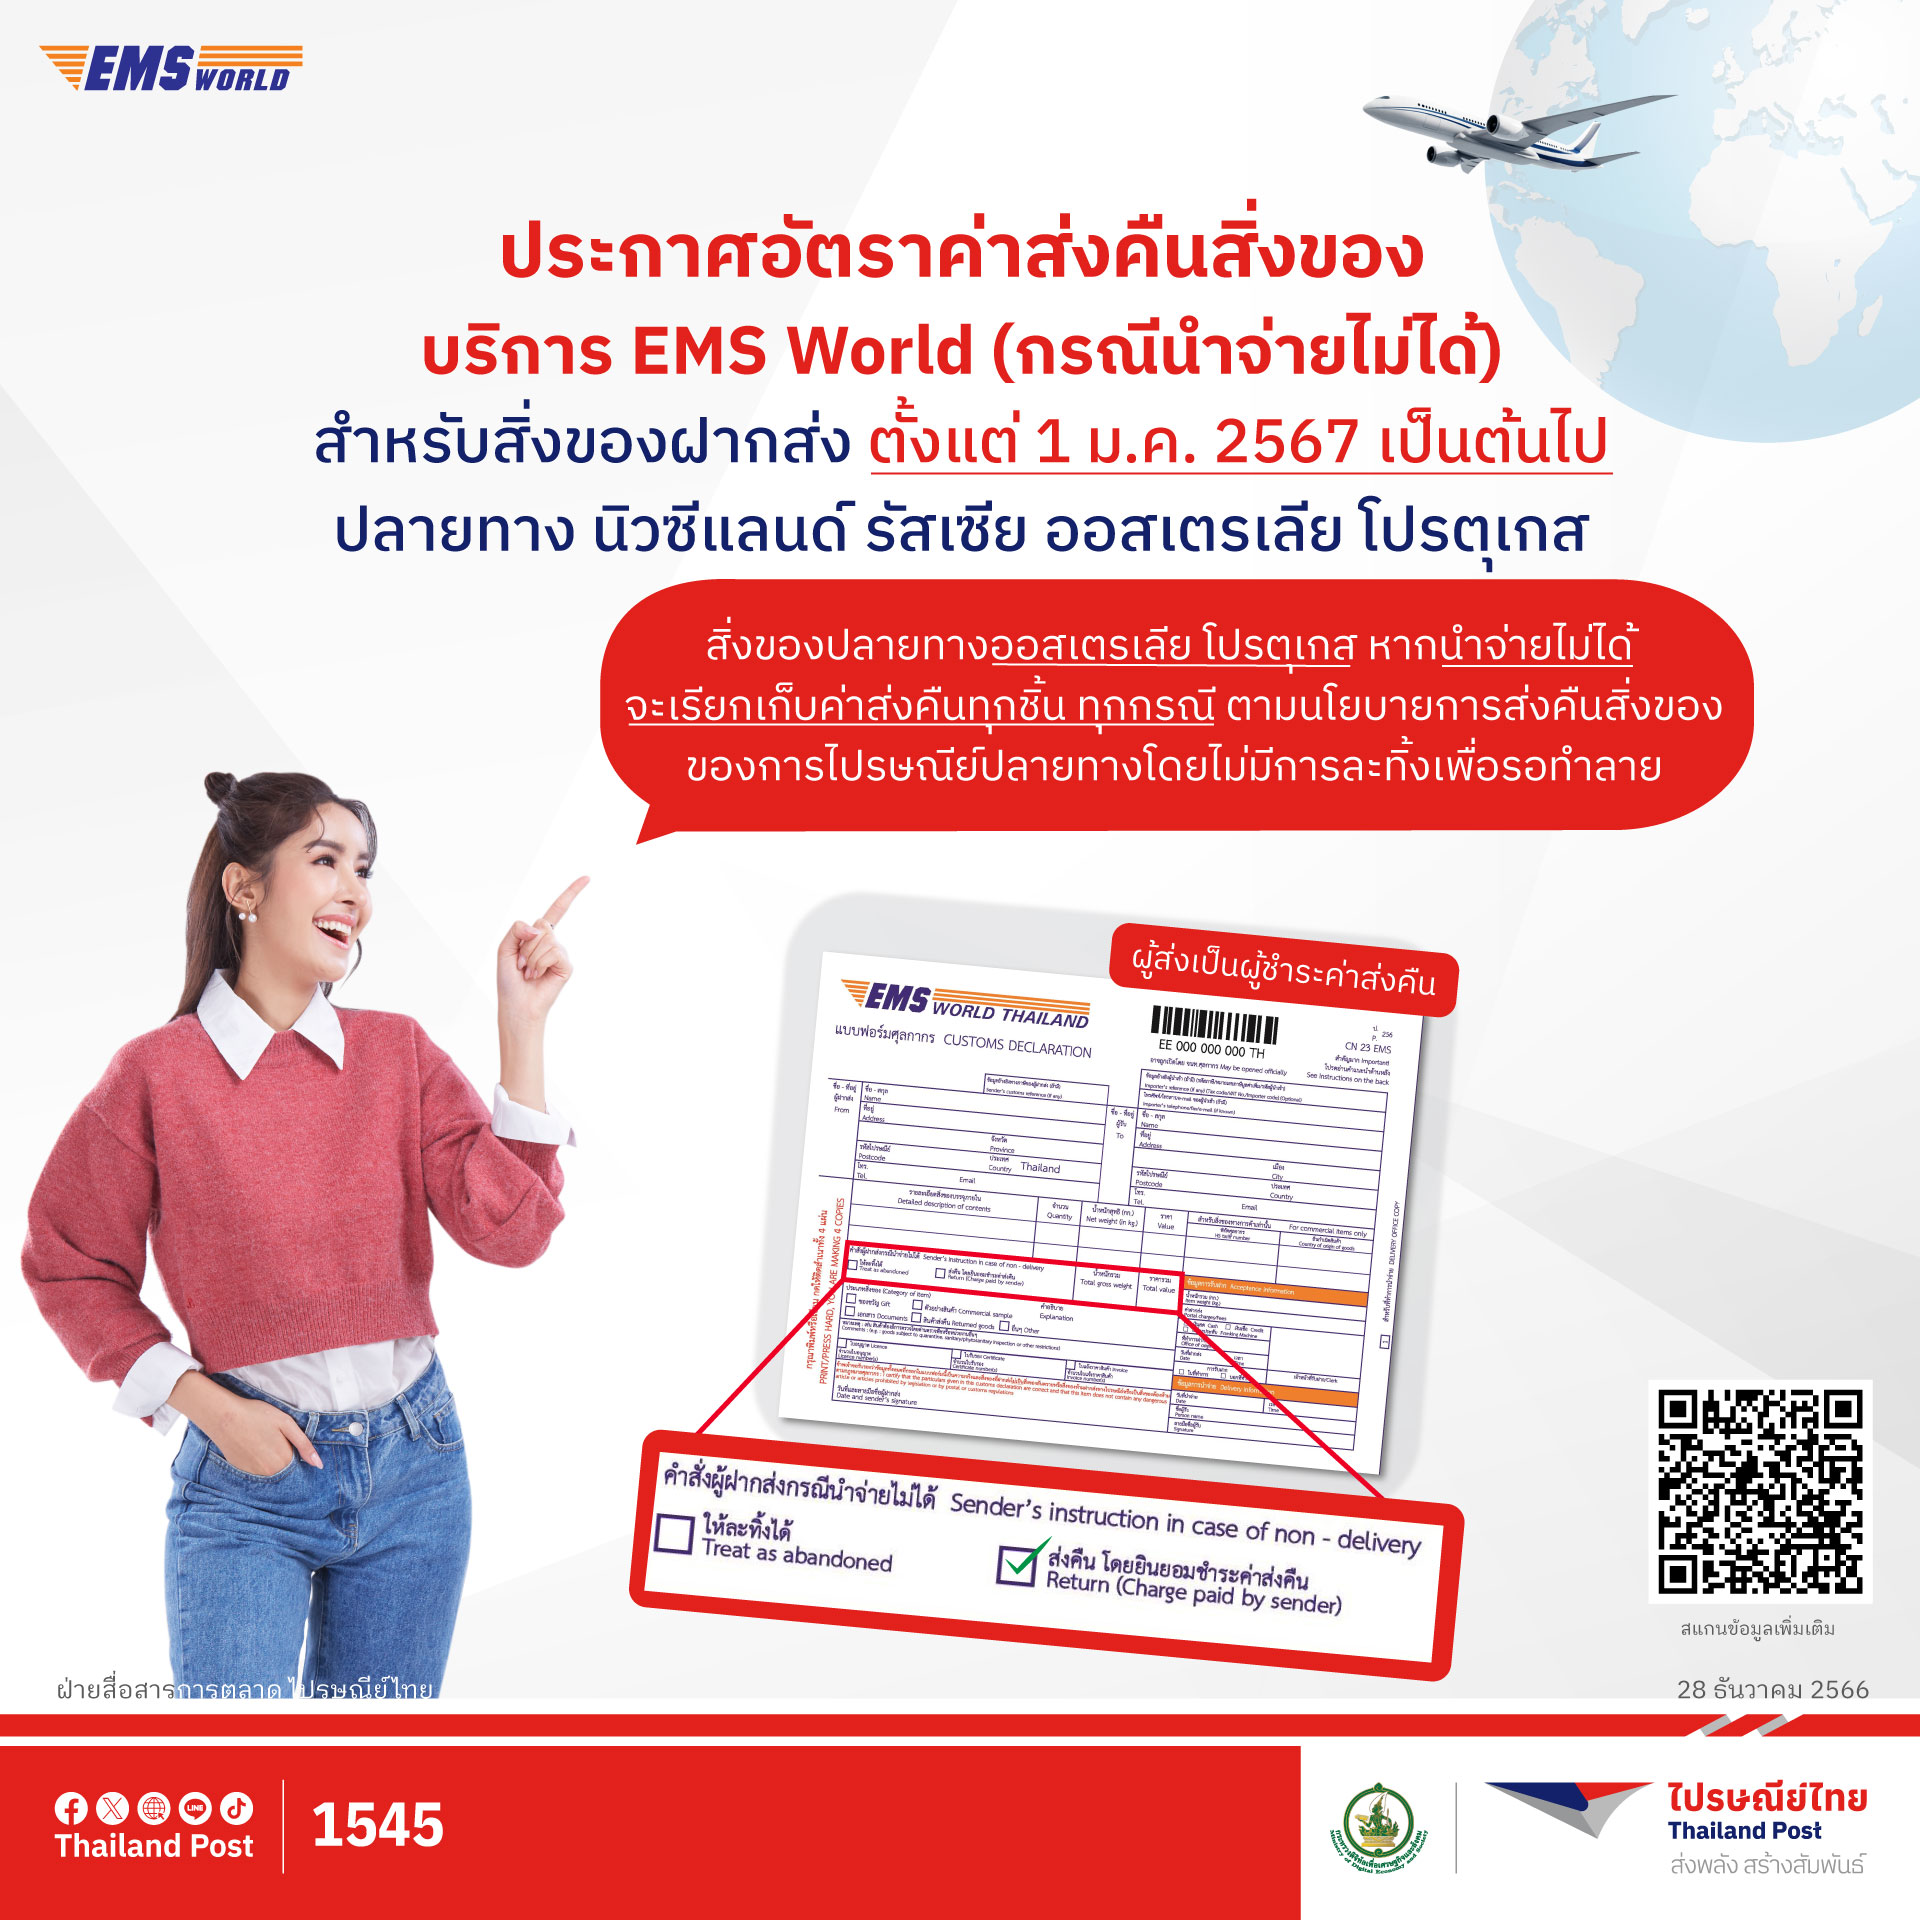 ไปรษณีย์ไทย ประกาศเก็บค่าส่งคืนสิ่งของในบริการ EMS World  4 ปลายทาง 'นิวซีแลนด์ รัสเซีย ออสเตรเลีย โปรตุเกส' เริ่ม 1 ม.ค. 67